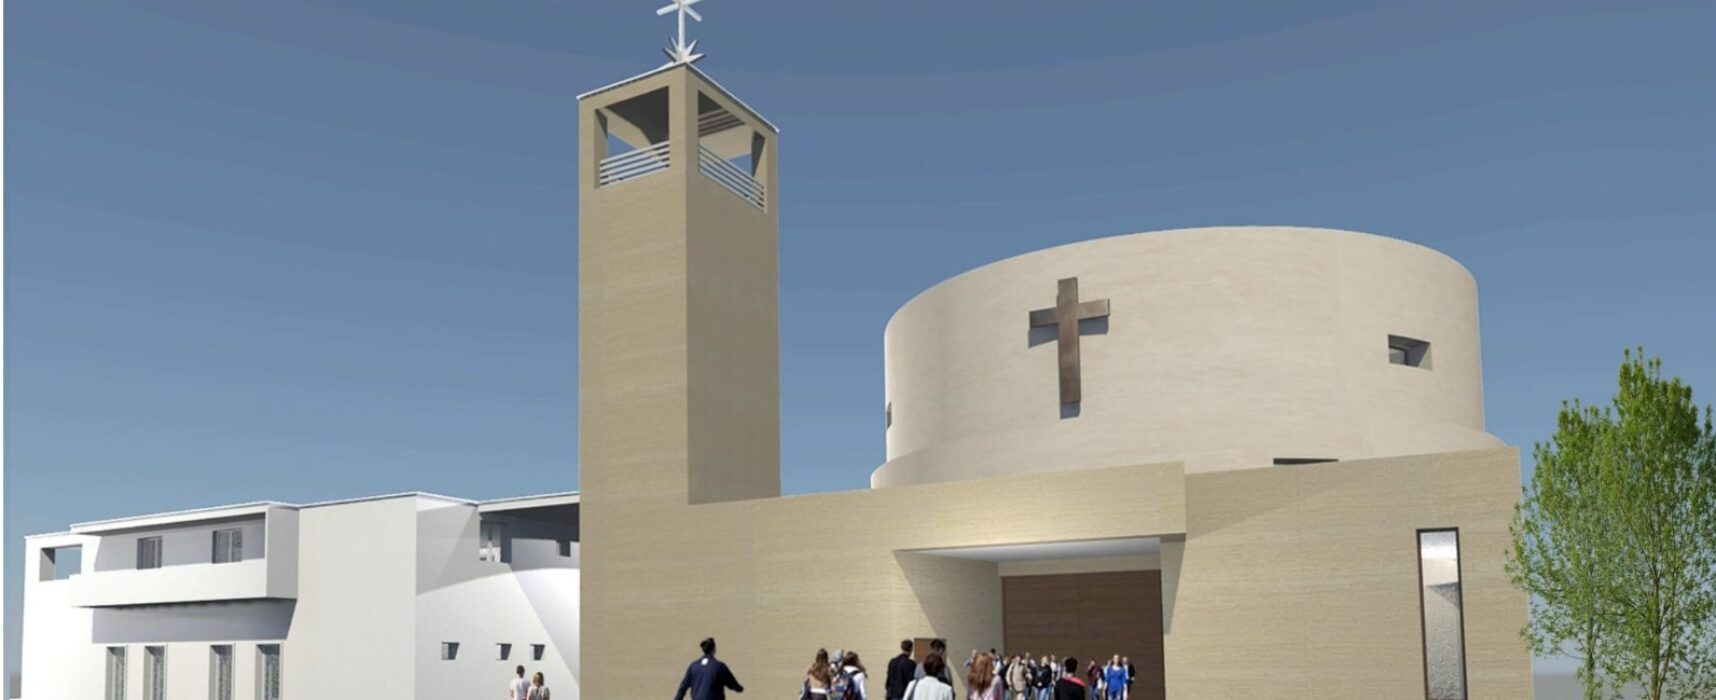 Ufficiale la costruzione della chiesa Stella Maris, l’annuncio dell’Arcivescovo D’Ascenzo